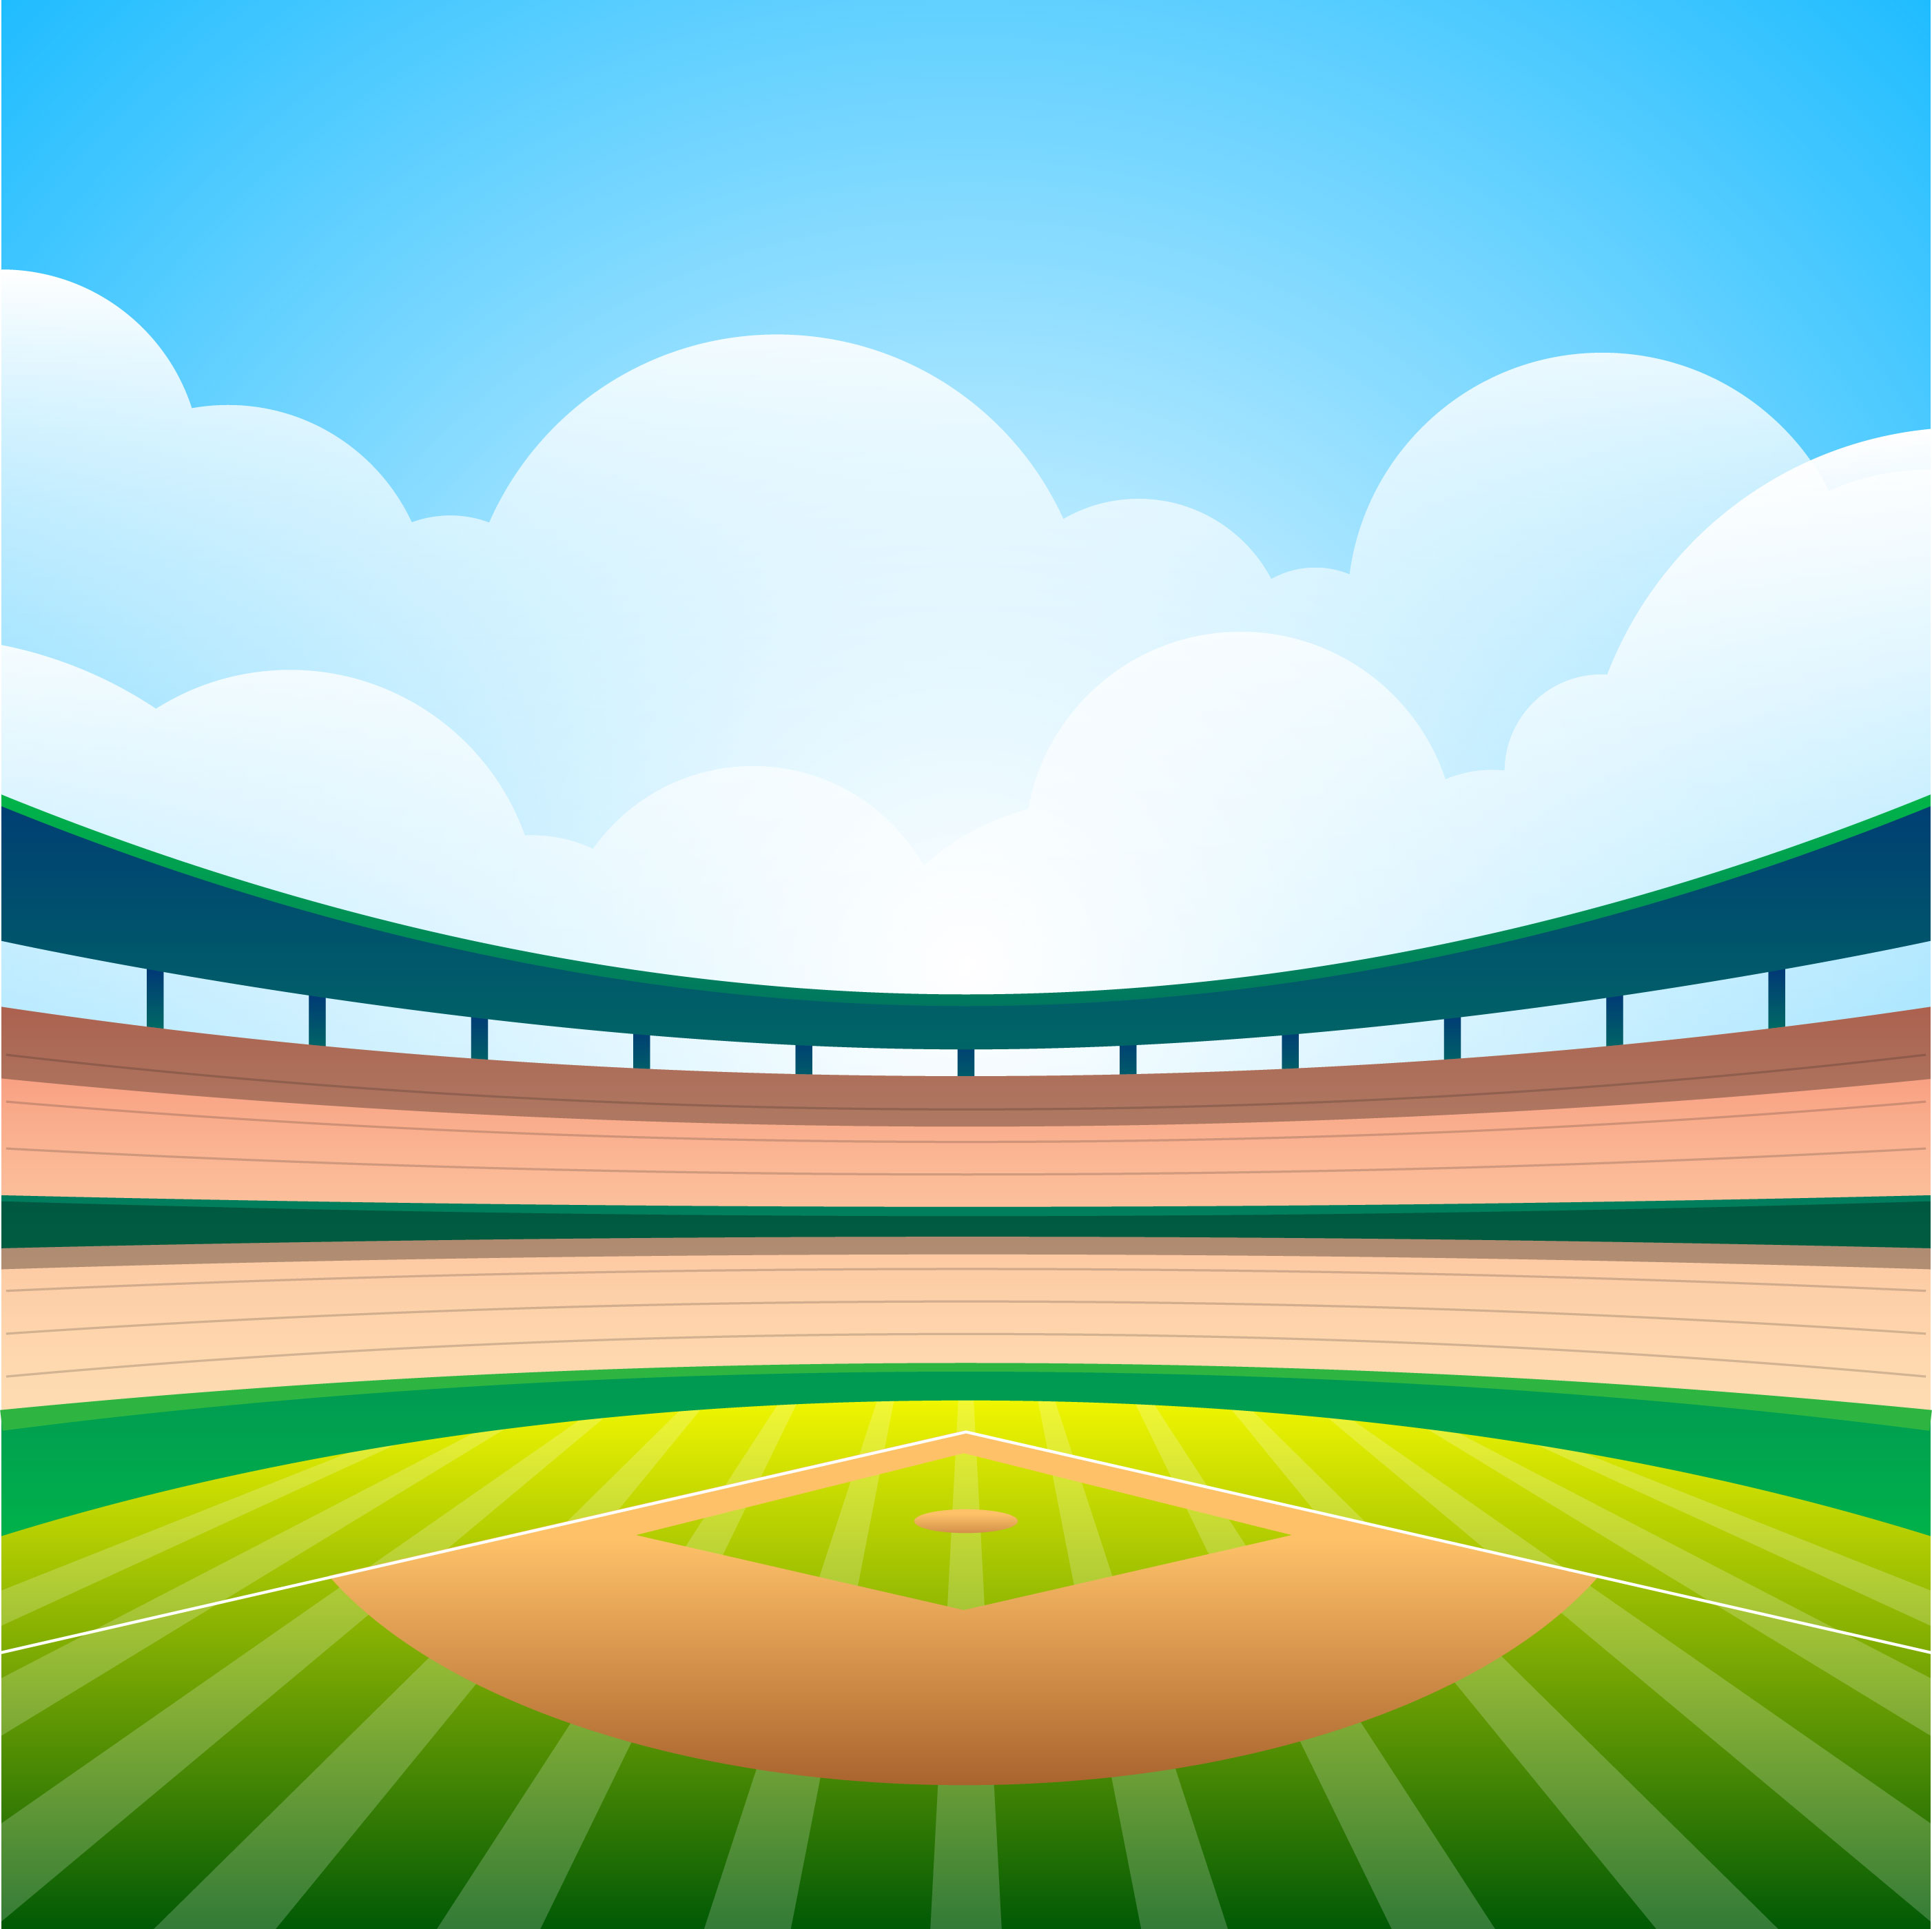 Baseball Field With Bright Stadium Vector Illustration 232589 Vector